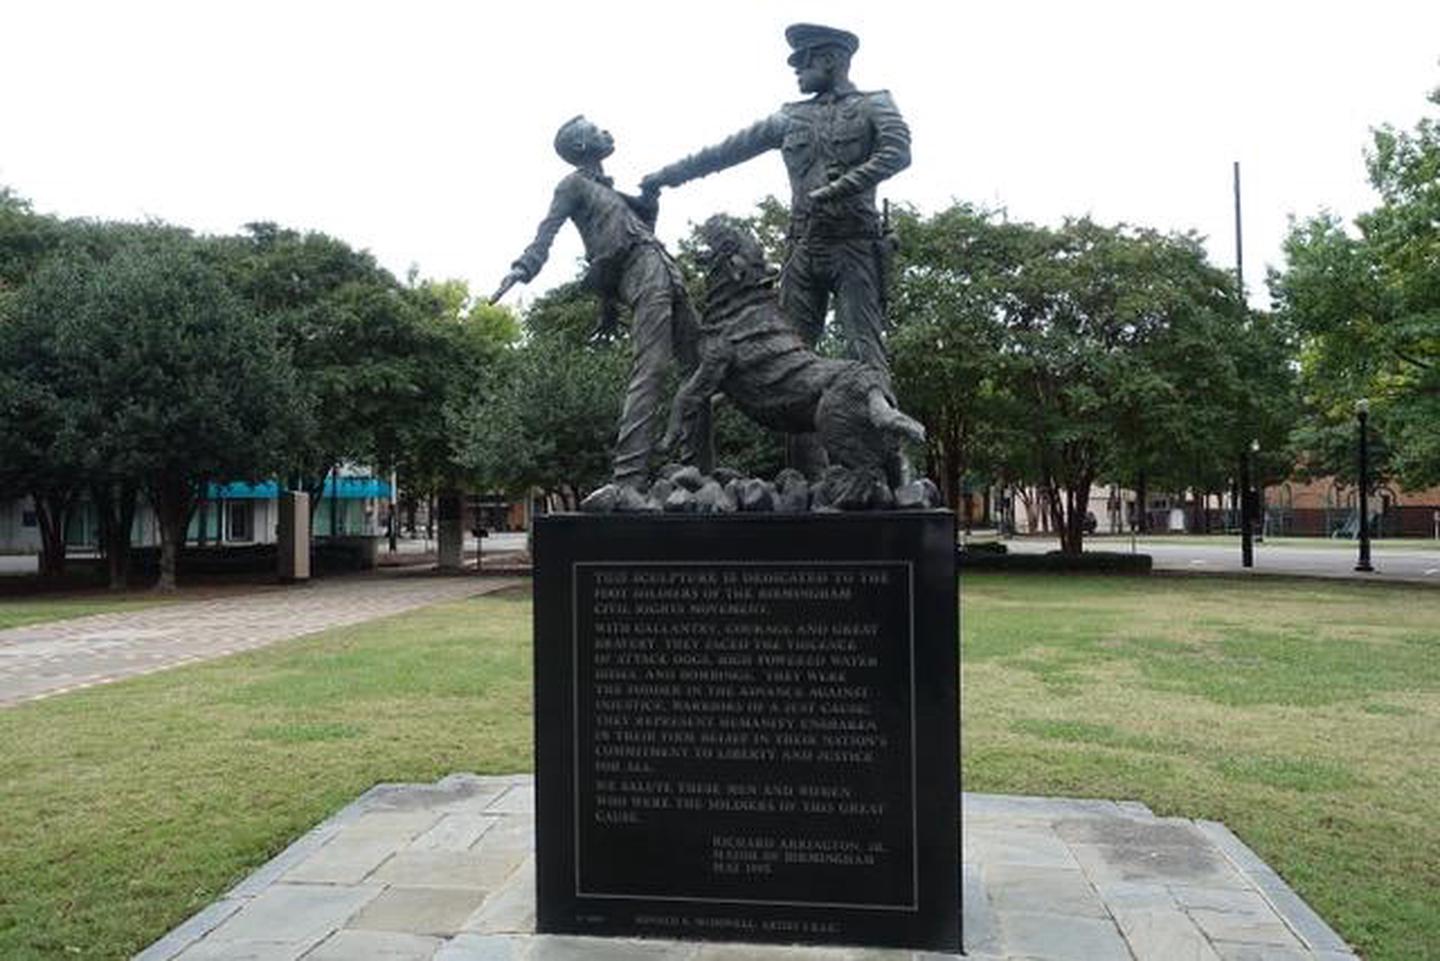 Kelly Ingram Park foot soldiers statueStatue in Kelly Ingram park dedicated to Birmingham Foot soldiers